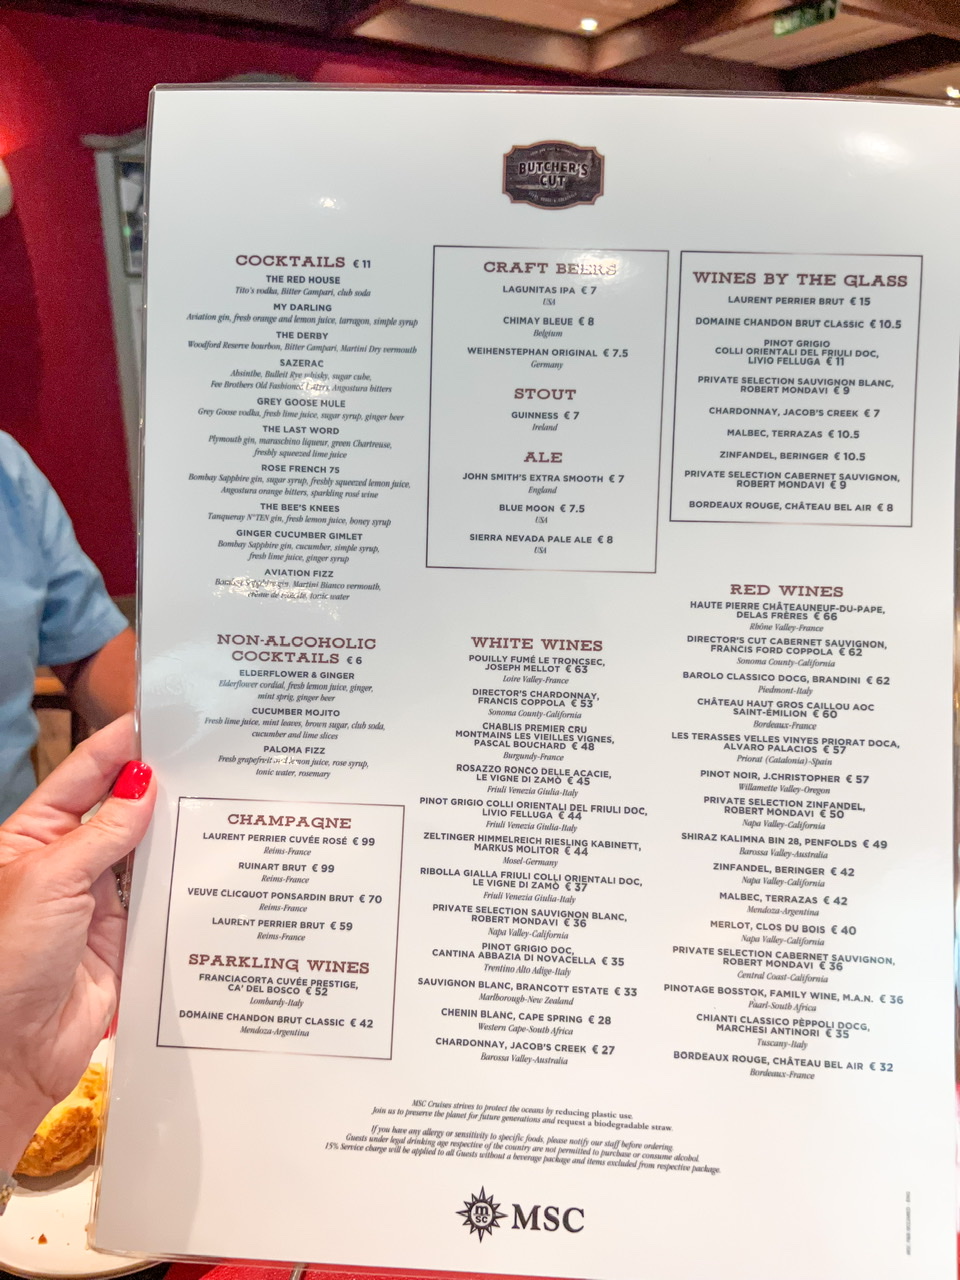 MSC Fantasia butchers cut menu